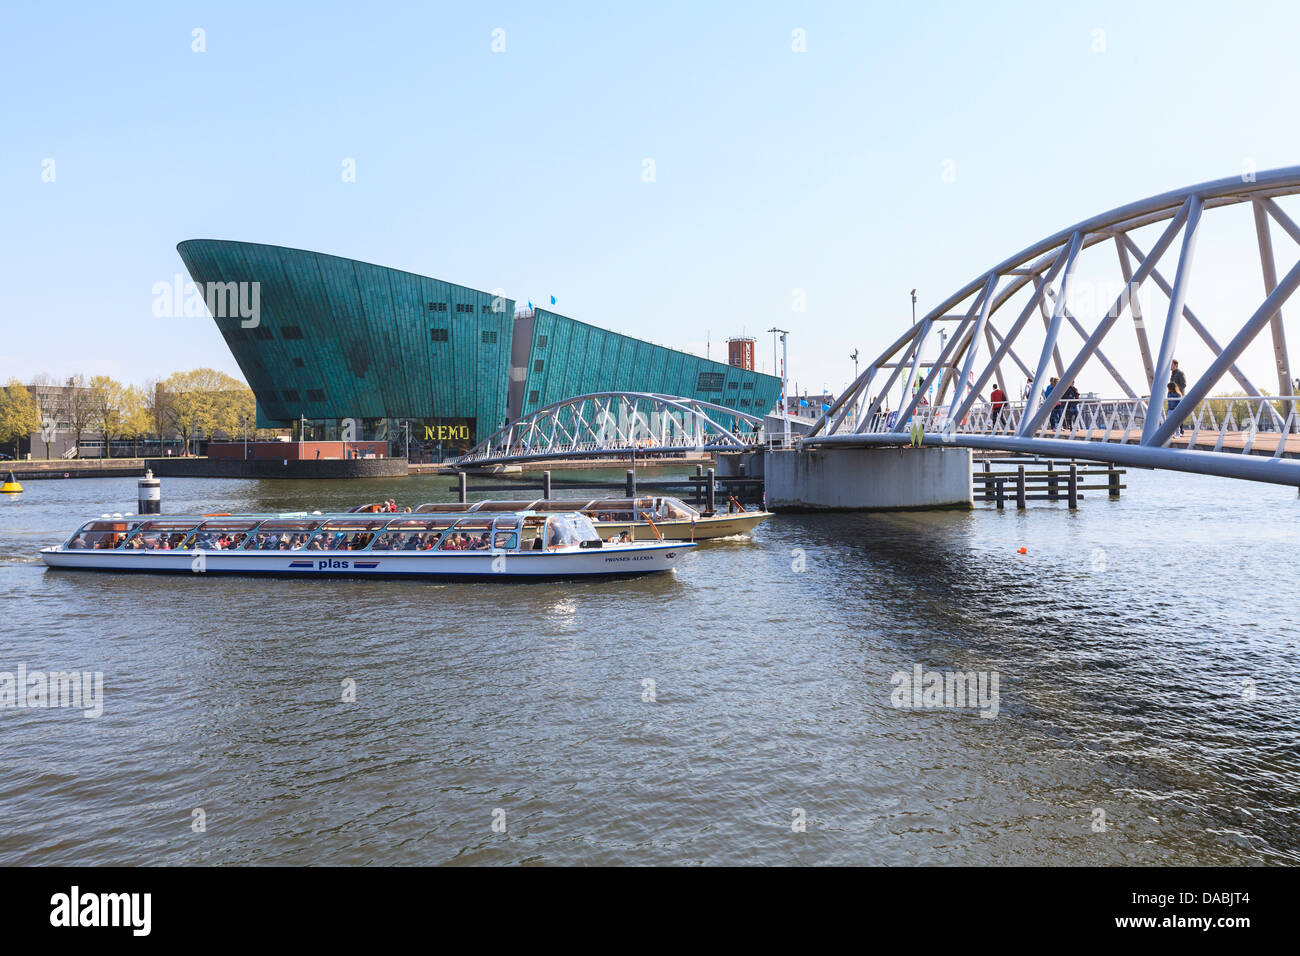 NEMO, Museo delle scienze e della tecnologia, Eastern Docks, Amsterdam, Paesi Bassi, Europa Foto Stock